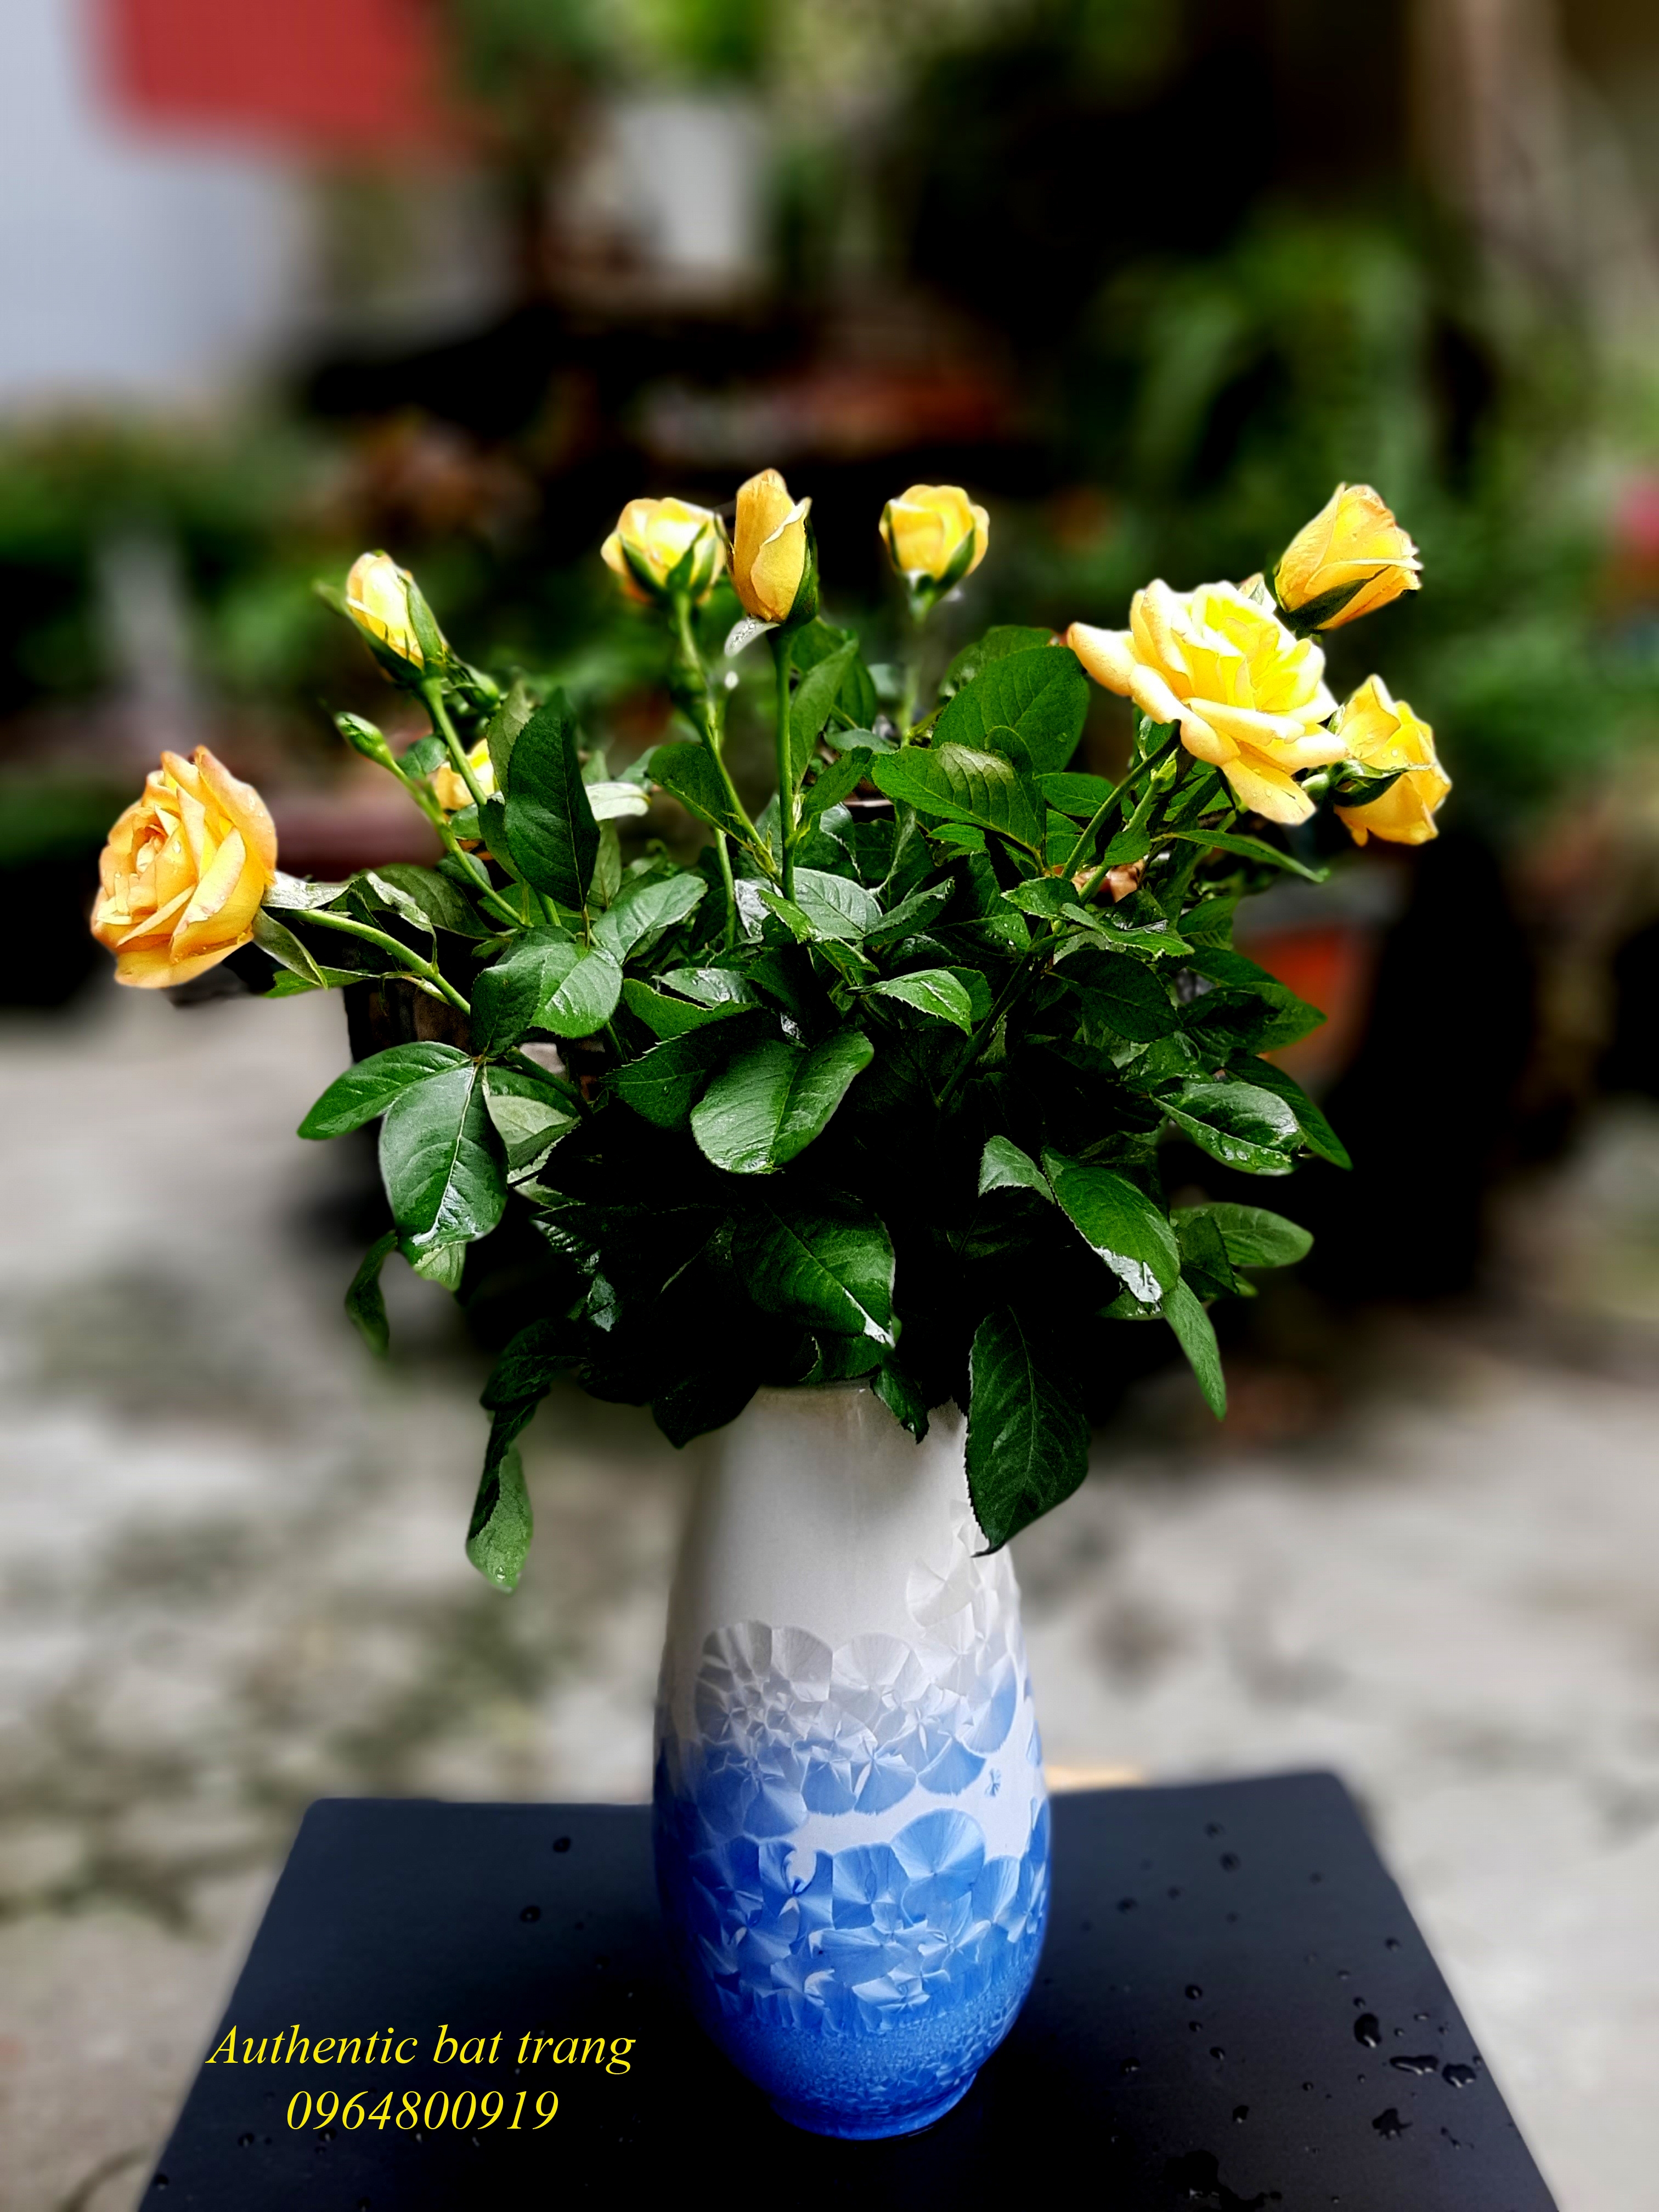 SIÊU ĐẸP VÀ RẺ- Bình cắm hoa size lớn ,men kết tinh xanh sản xuất tại xưởng gốm sứ Authentic bát tràng